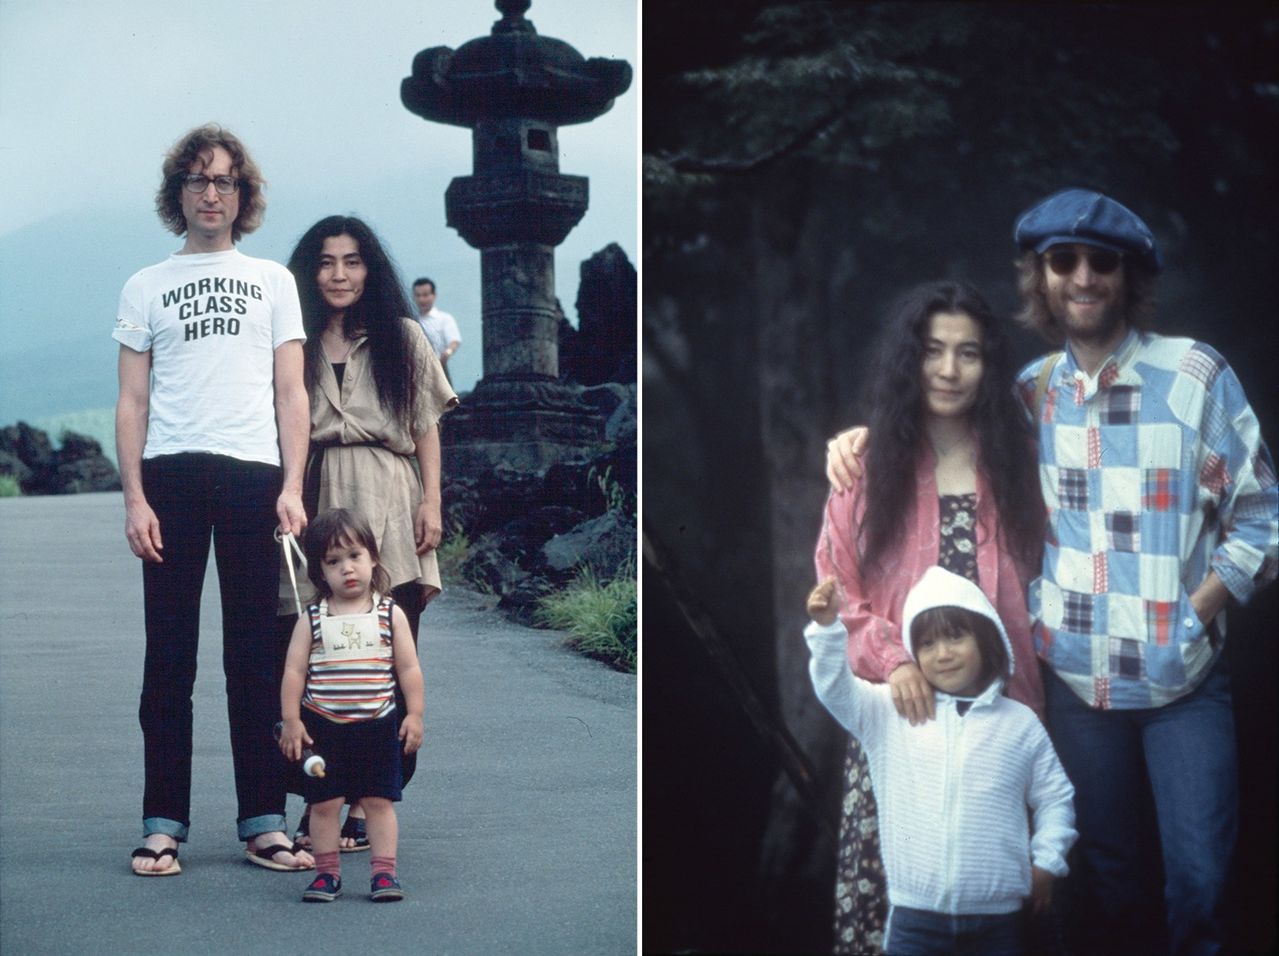 Izquierda: John, Yōko y Sean en 1977 durante un viaje en familia (fotografía de Nishi F. Saimaru ©Yoko Ono). Derecha: Los tres en 1979, en Karuizawa (fotografía de Nishi F. Saimaru ©Nishi F. Saimaru & ©Yoko Ono) / de la exposición en Tokio「DOUBLE FANTASY - John & Yoko).